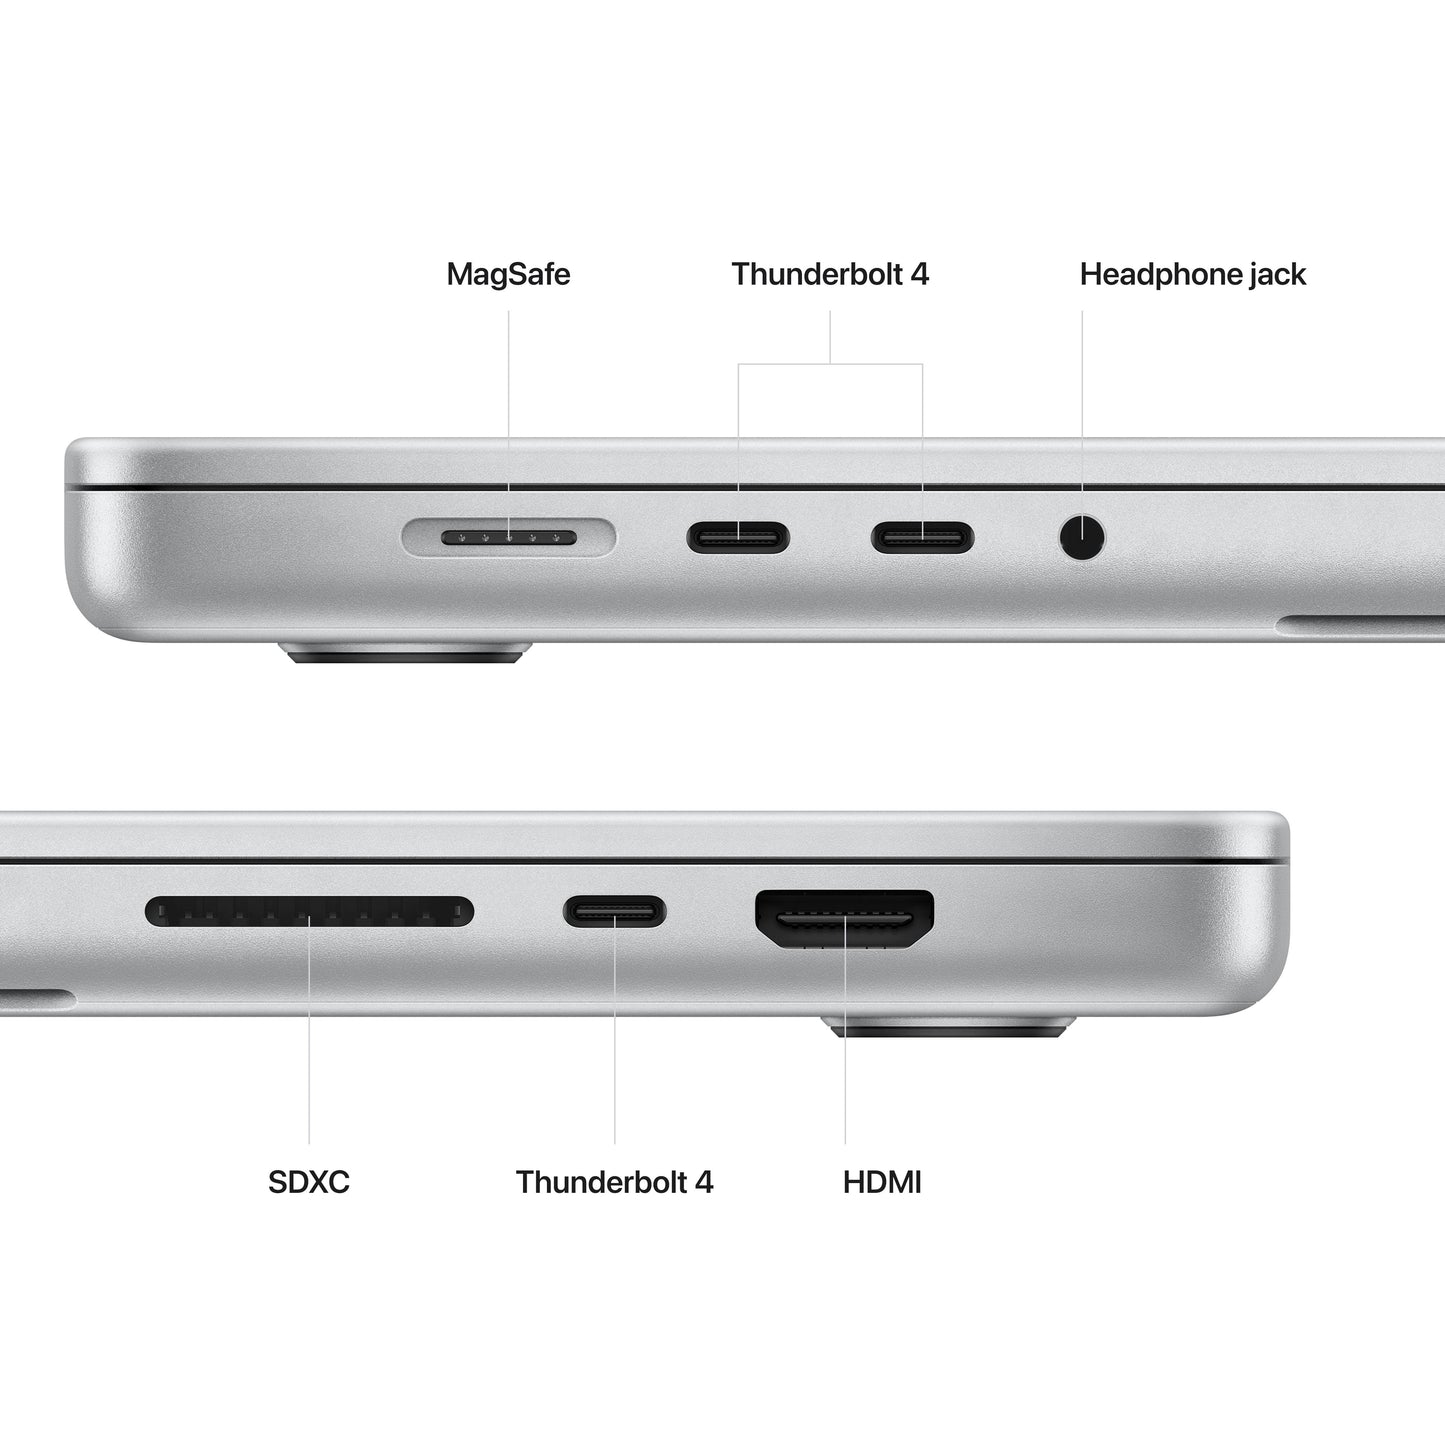 16-inch MacBook Pro: Apple M2 Pro chip with 12Corecore CPU and 19Corecore GPU, 512GB SSD - Silver